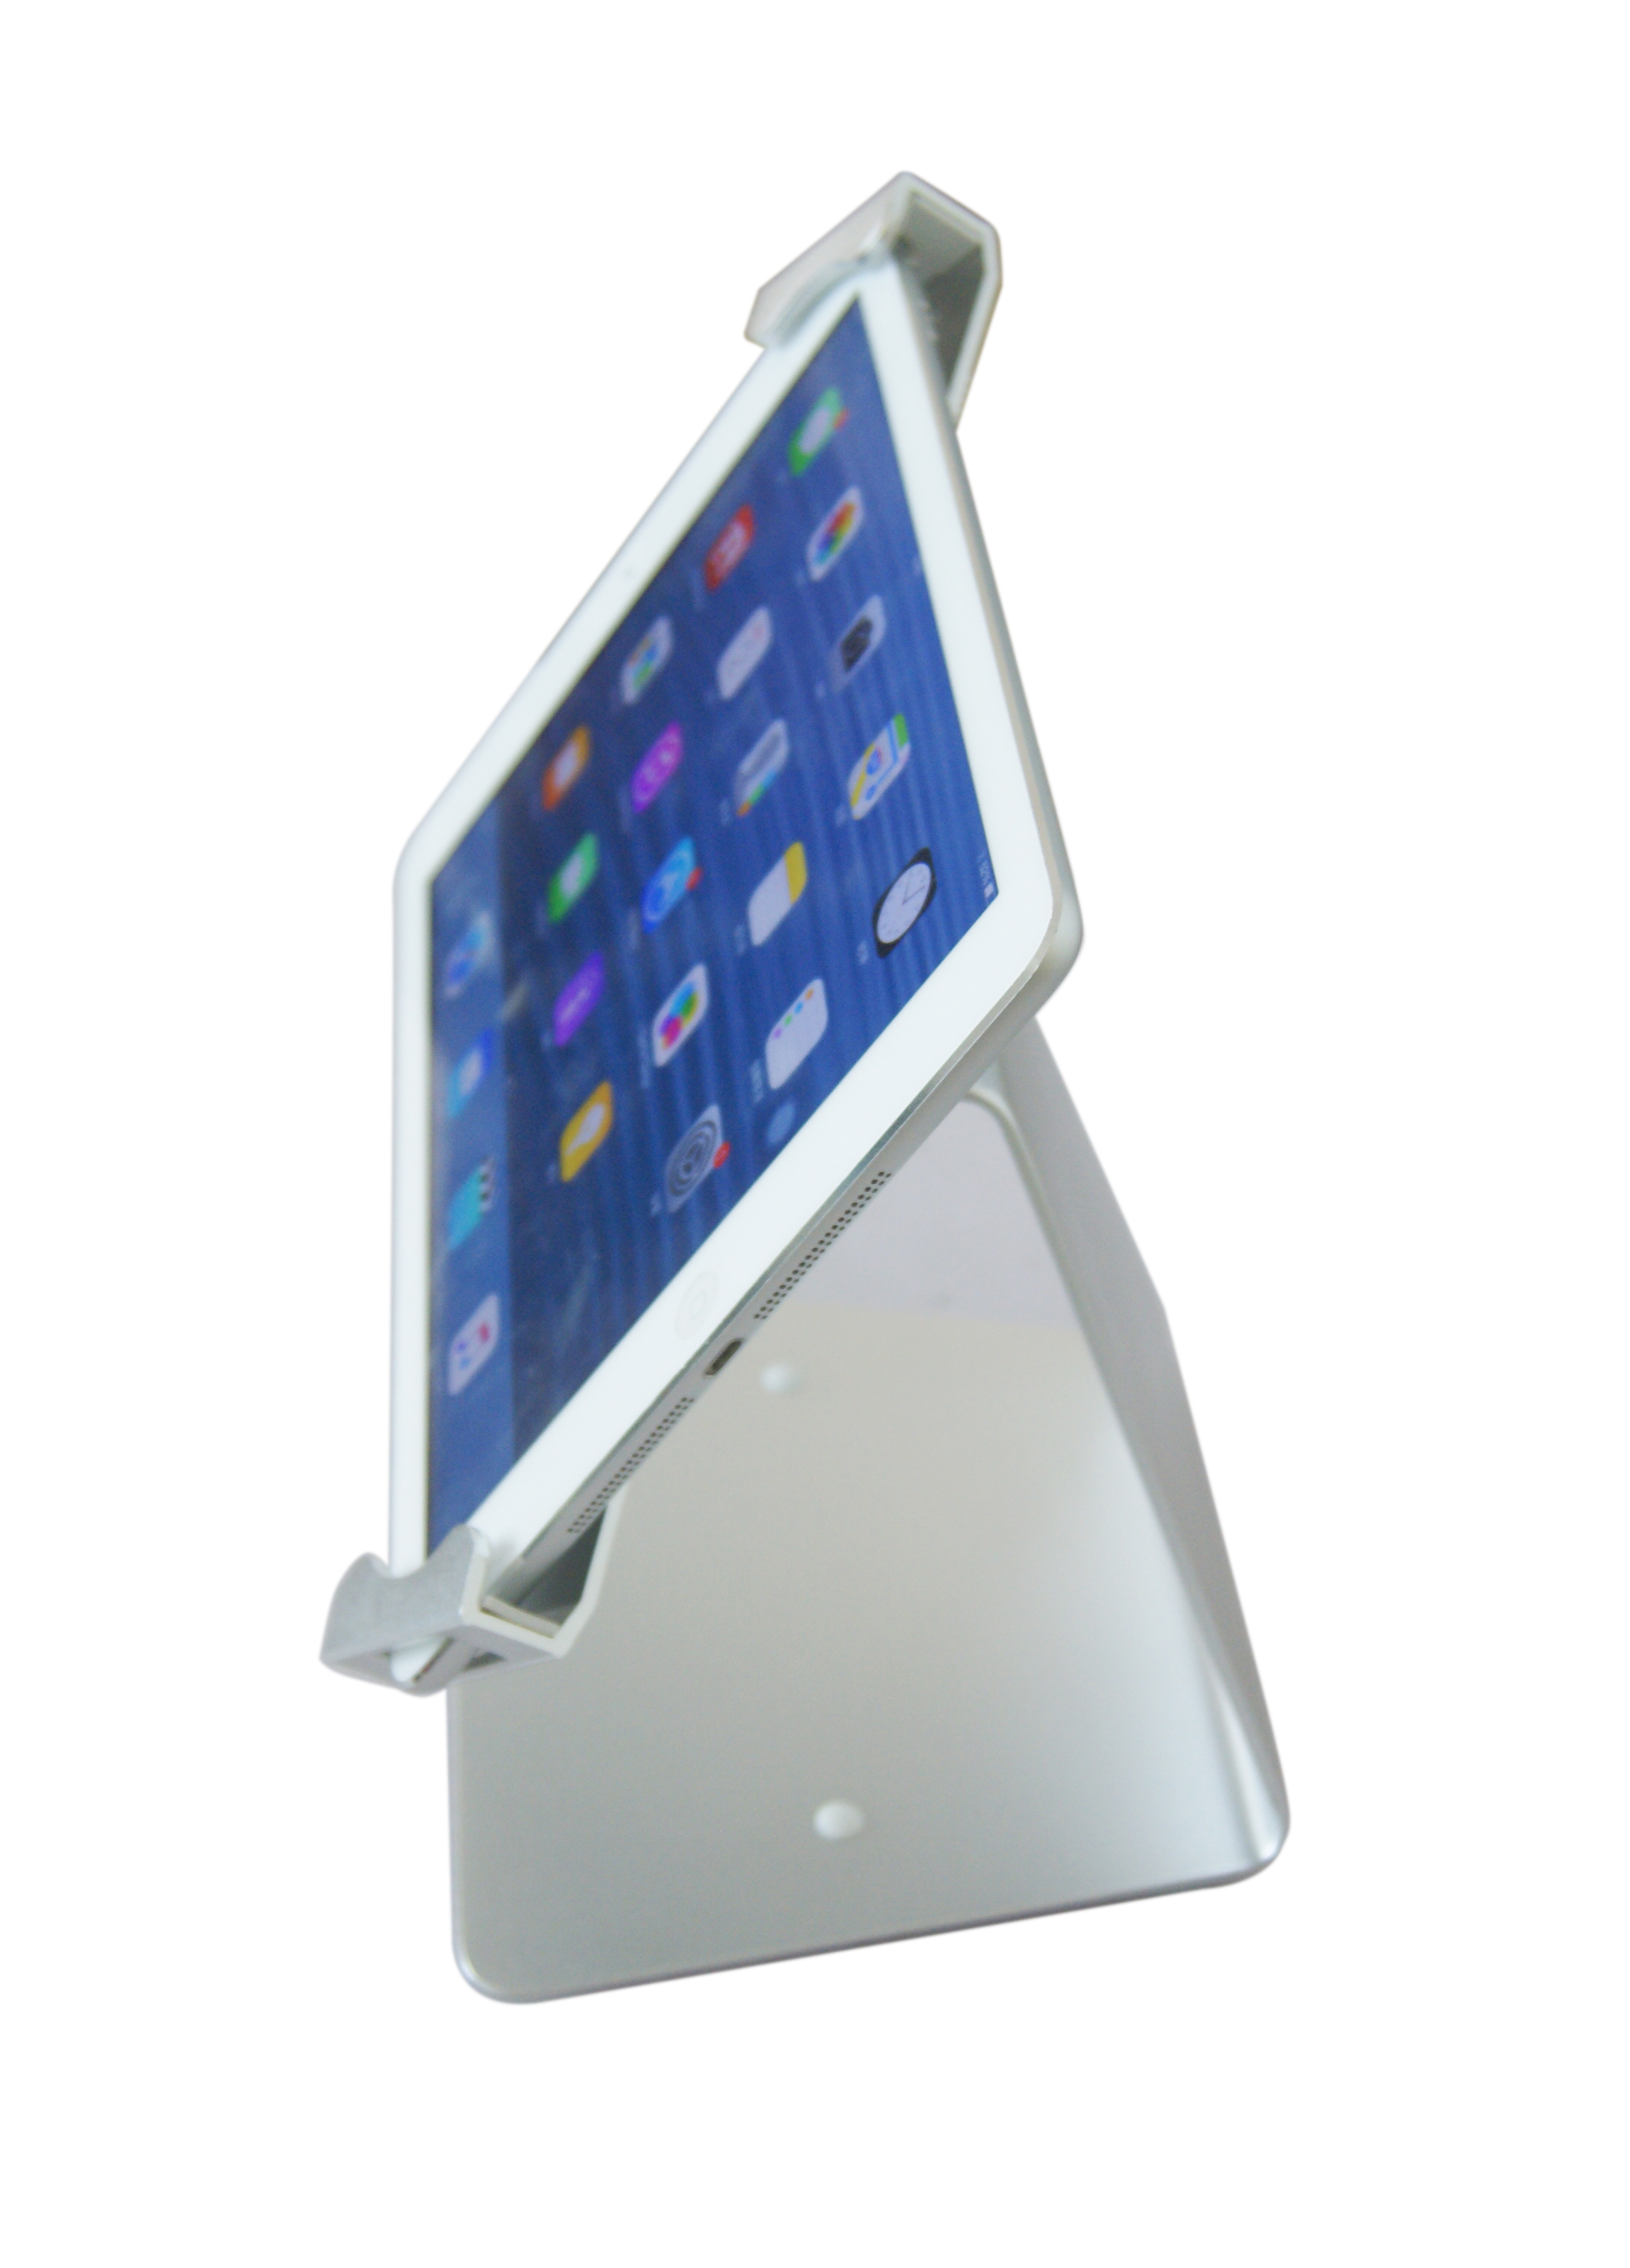 P20Q tablet desktop stand side